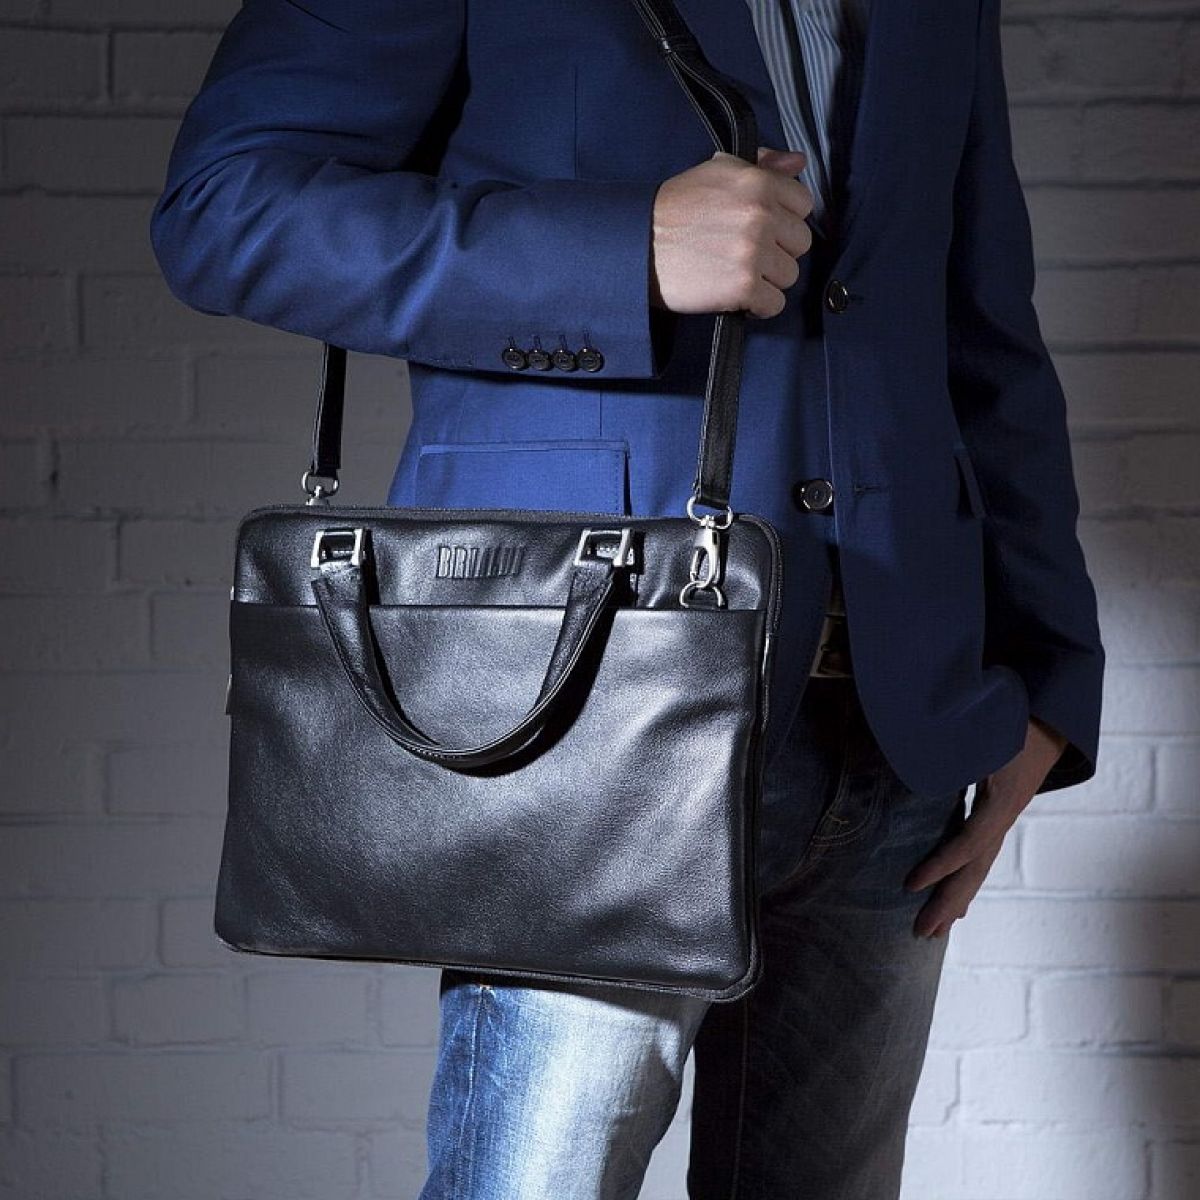 13 лучших брендов мужских сумок